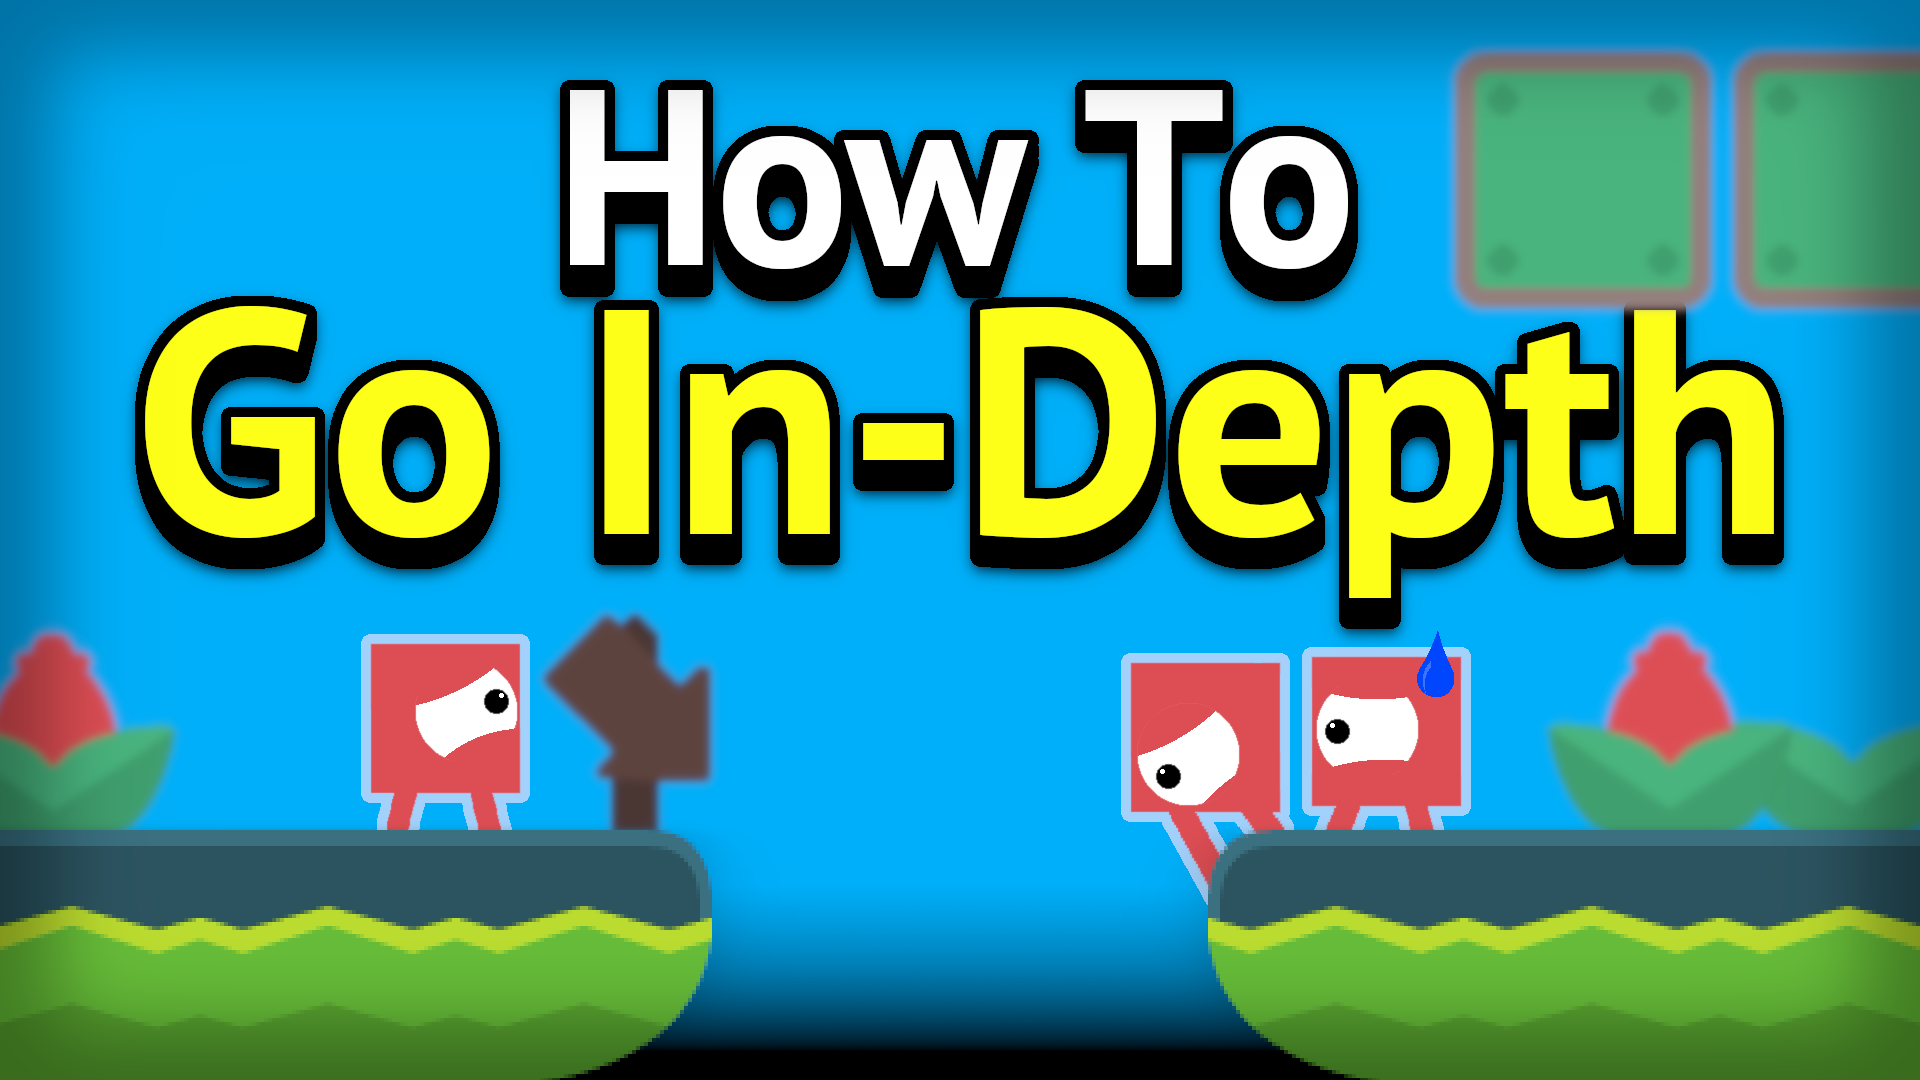 How To Go In-Depth